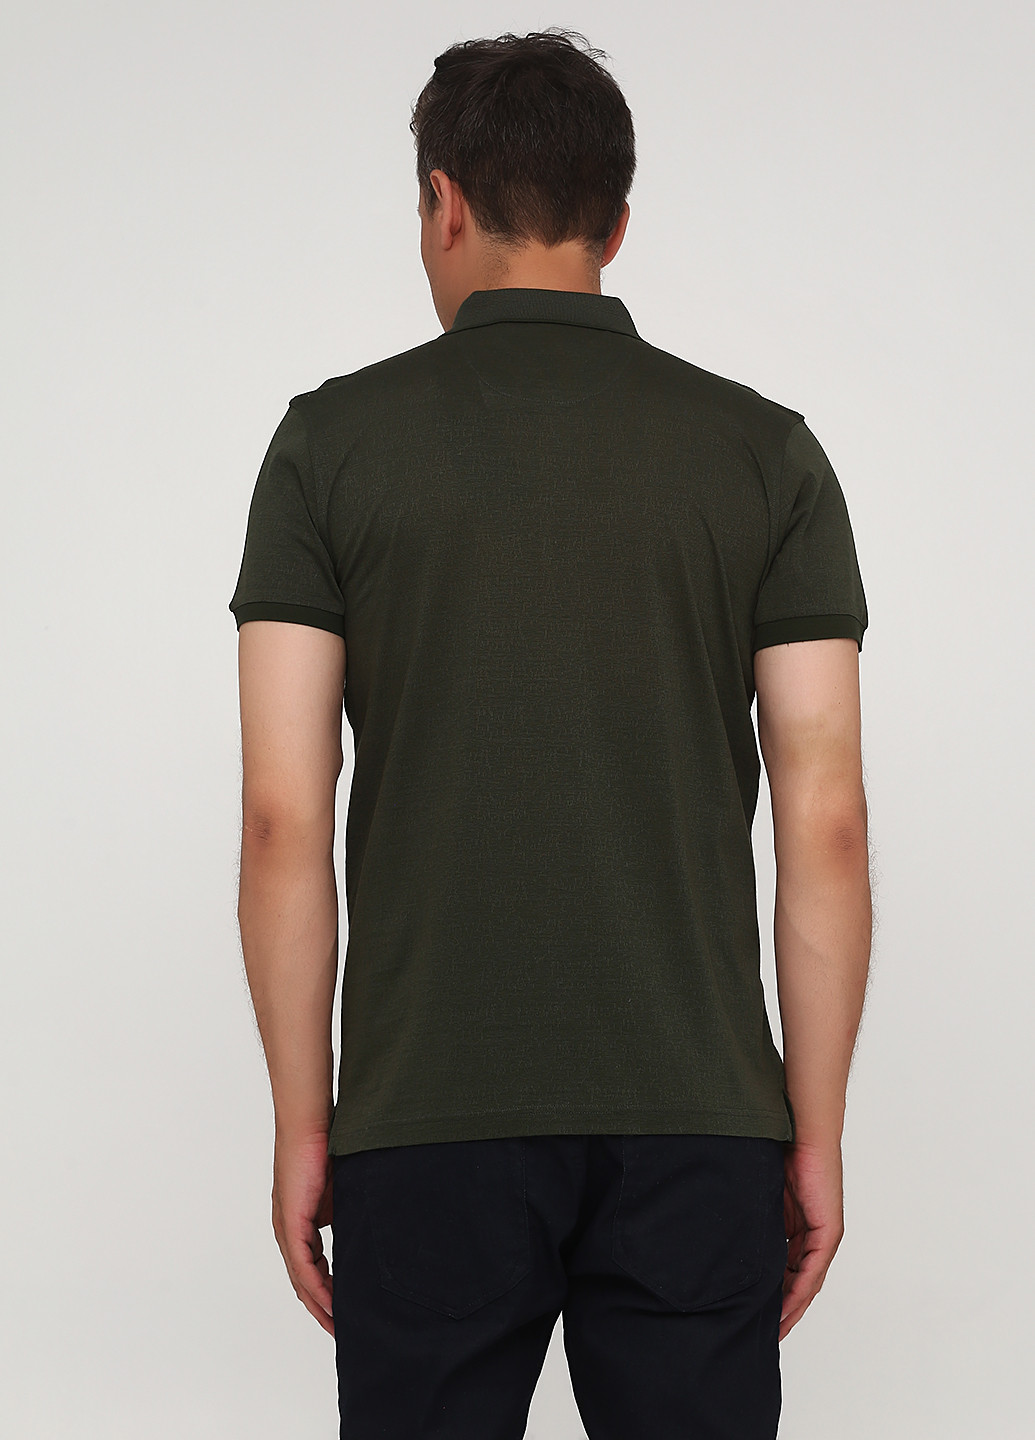 Оливковая футболка-поло для мужчин Climber с абстрактным узором